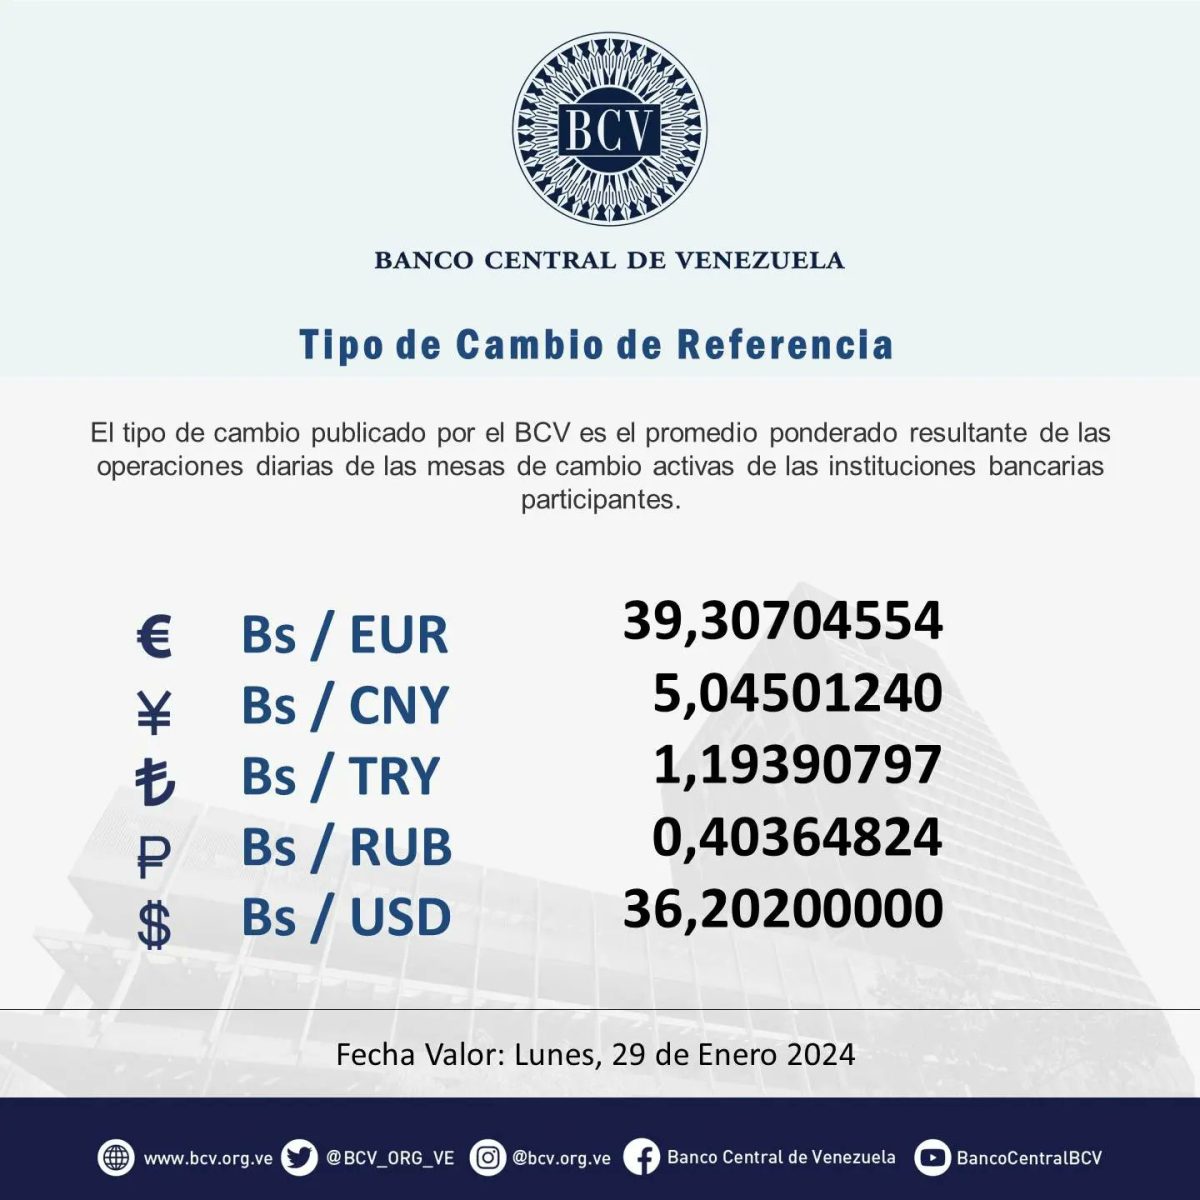 dolartoday en venezuela precio del dolar este sabado 27 de enero de 2024 laverdaddemonagas.com bcv11 1